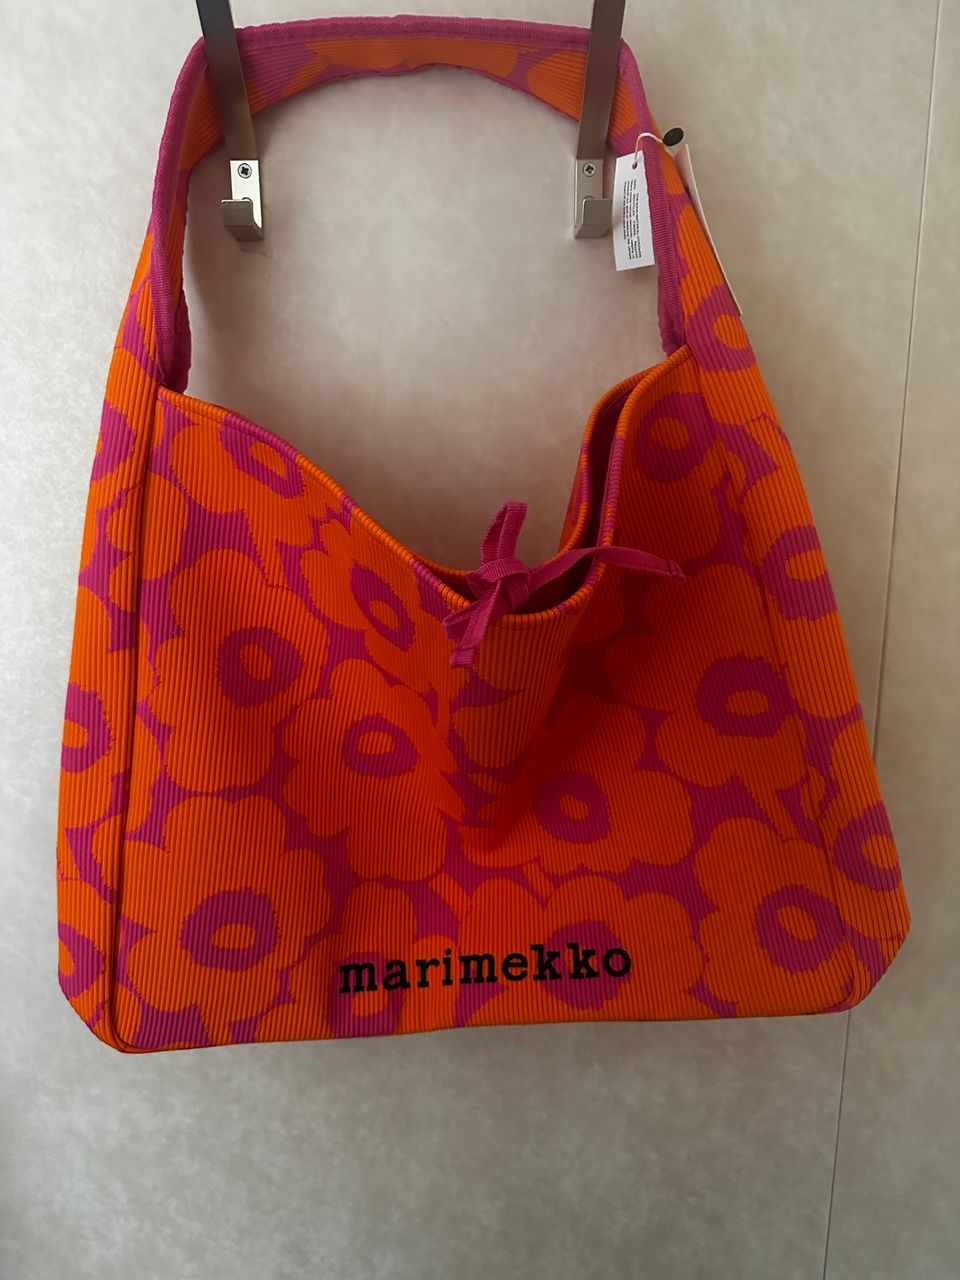 Marimekko Knitted bag large